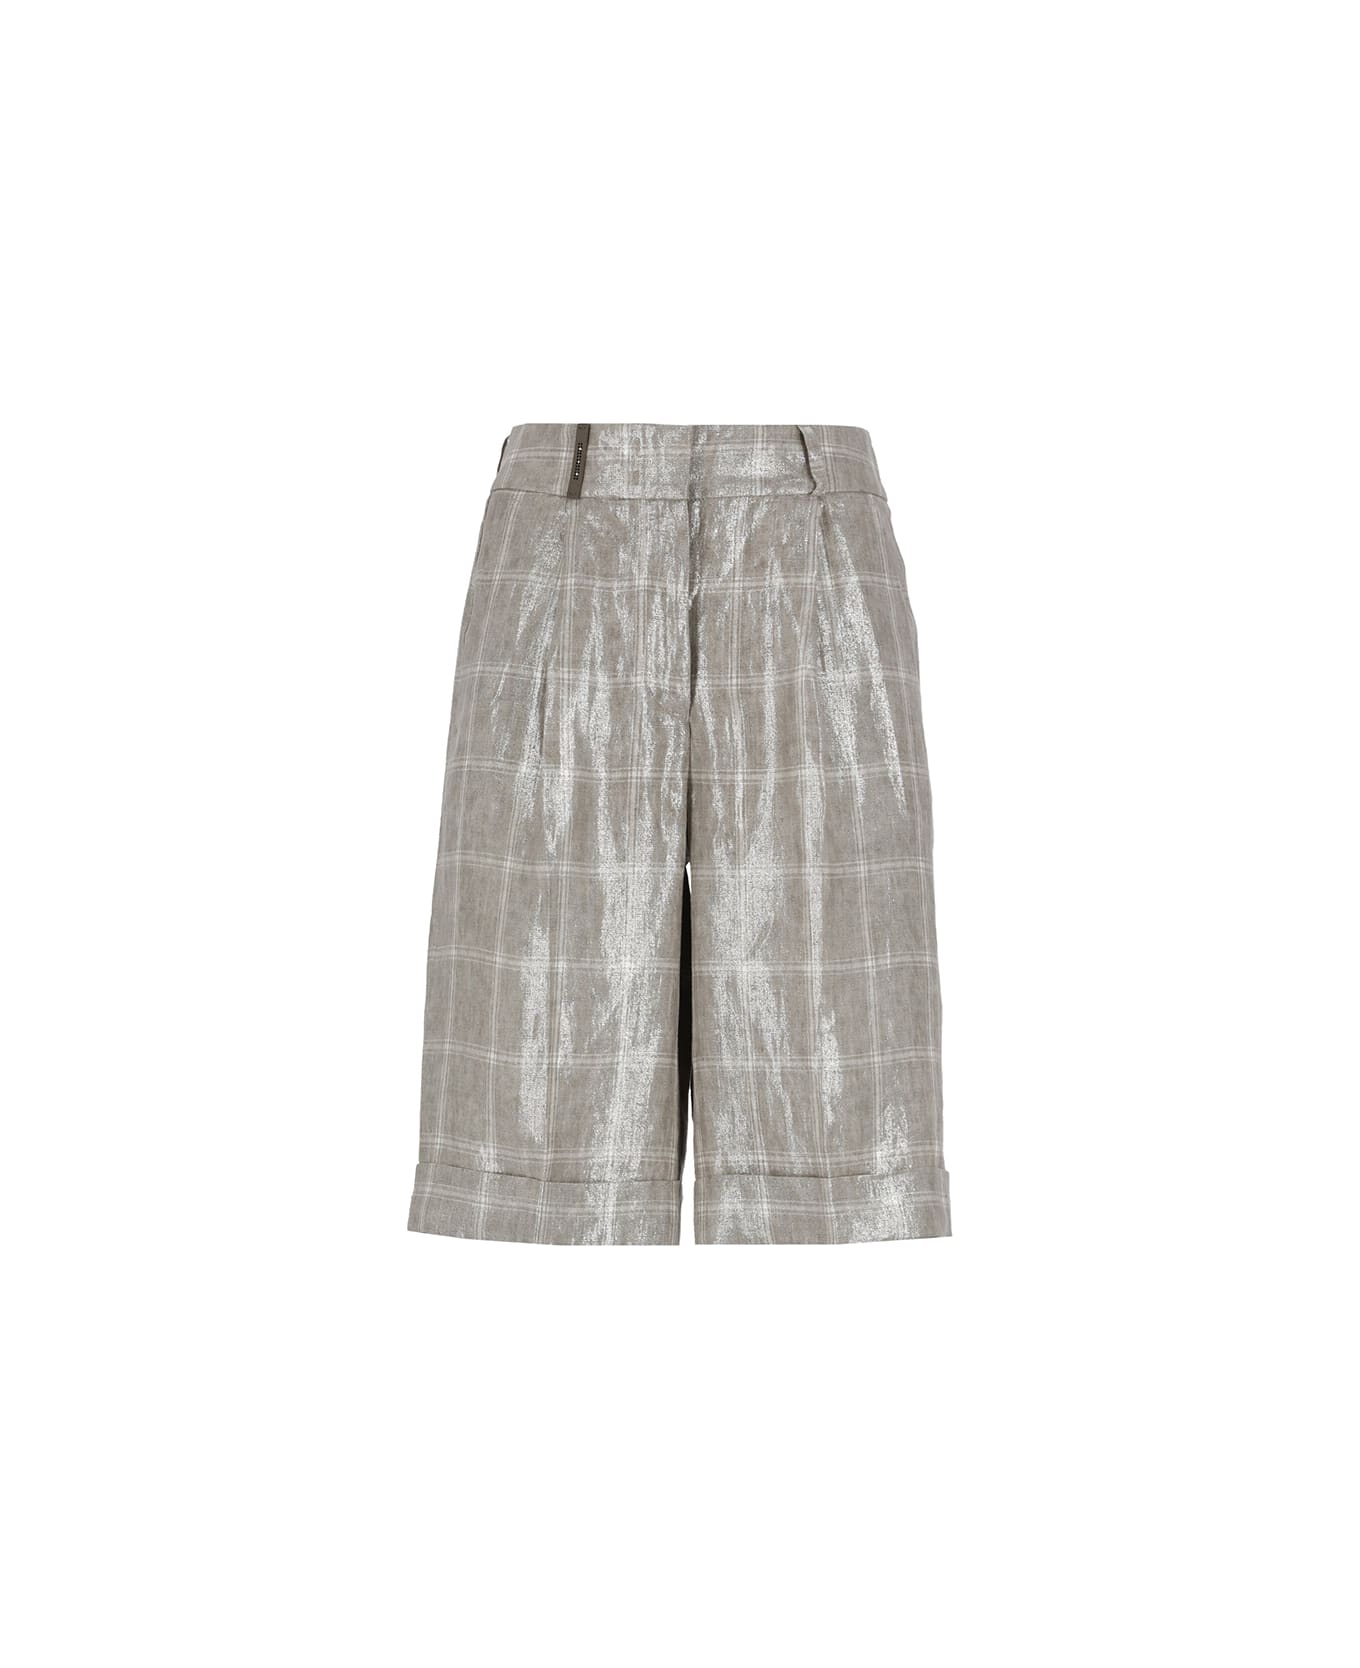 Peserico Check Linen Shorts - Grey